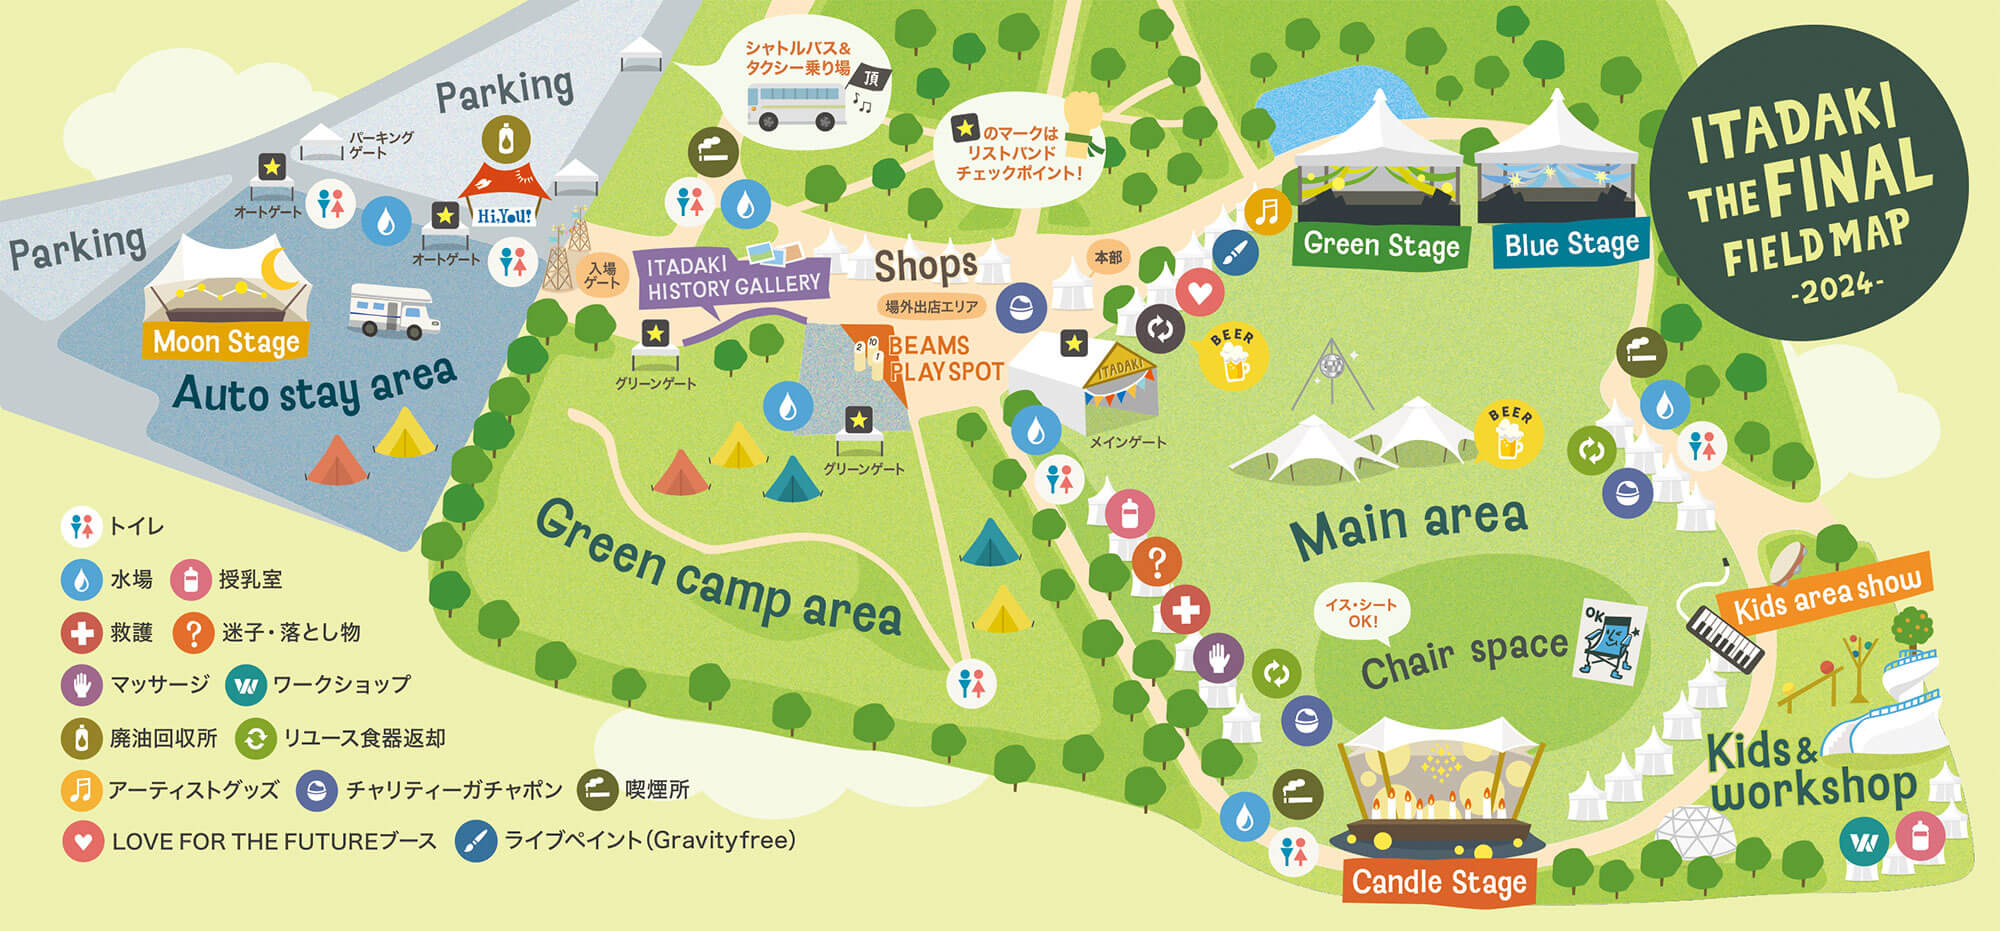 ITADAKI THE FINAL field map